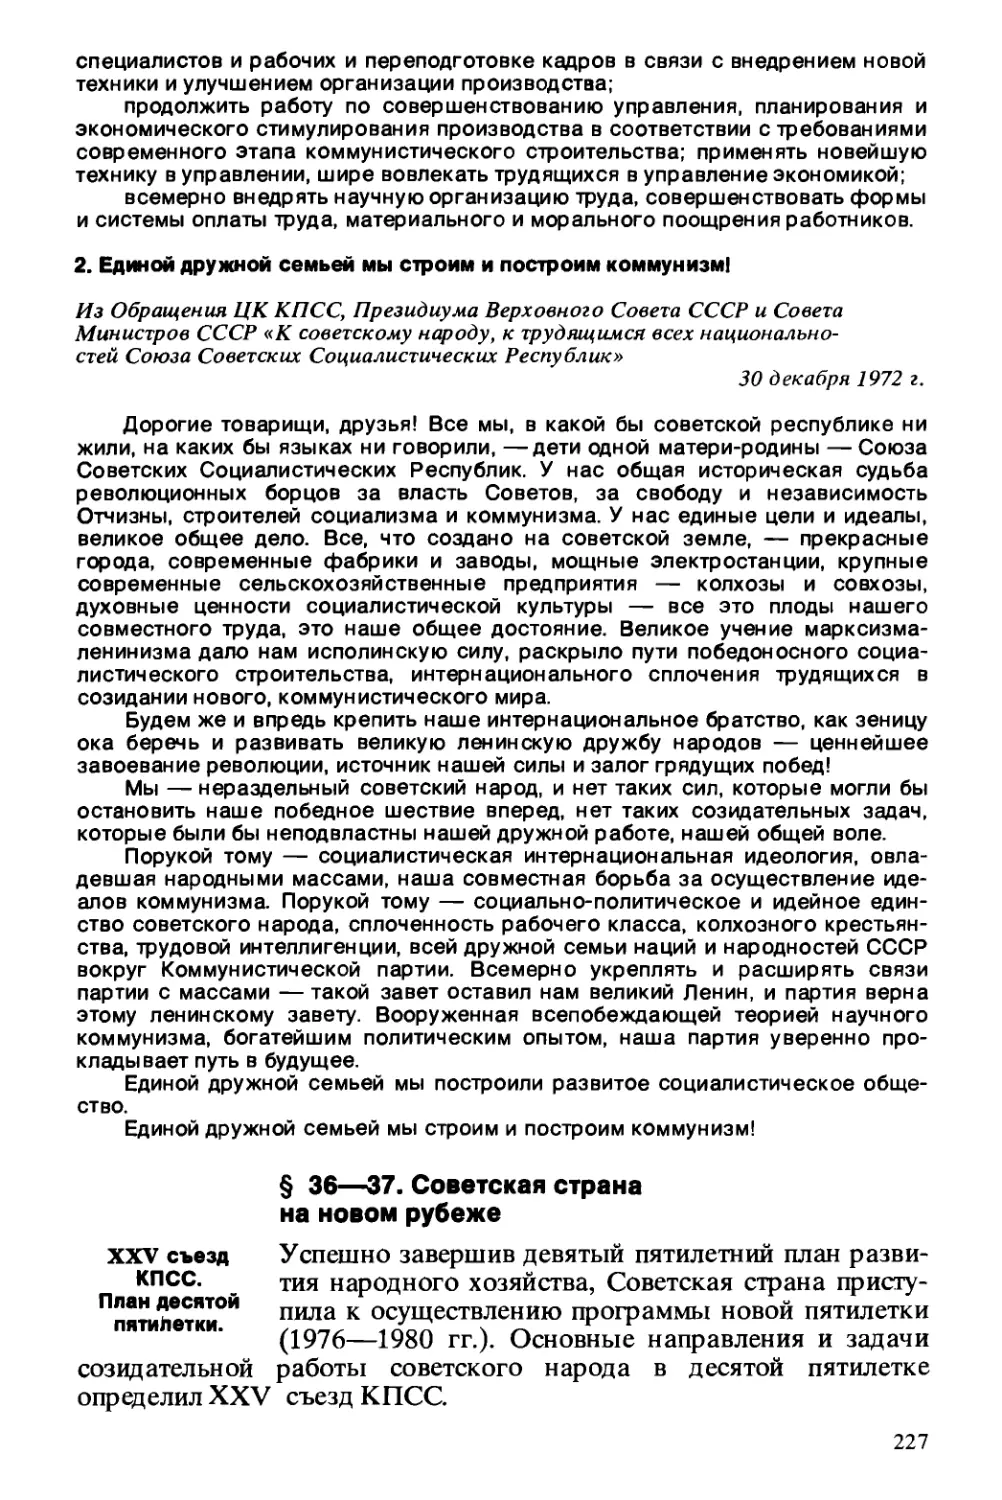 § 36—37. Советская страна на новом рубеже